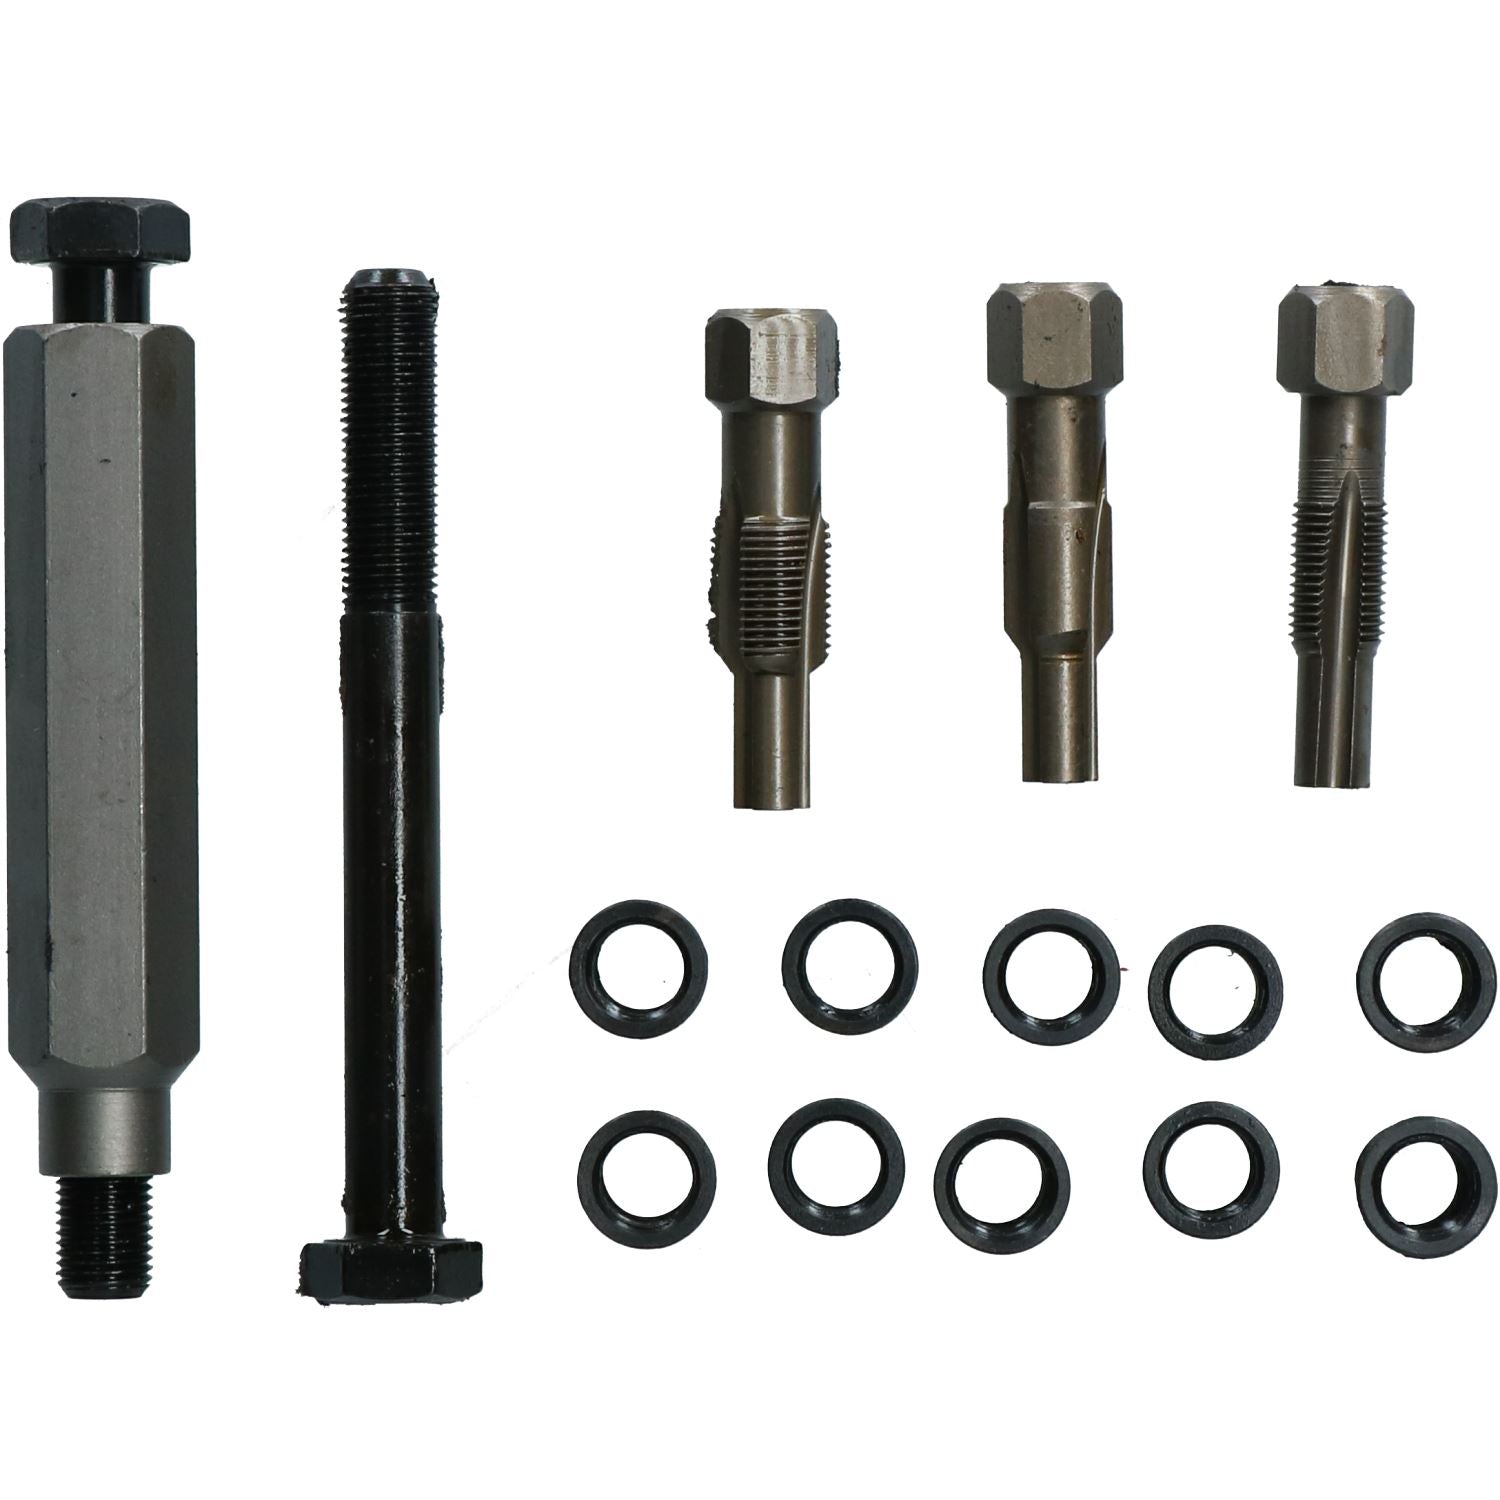 Glow Plug Cylinder Head Metric Thread Repair Restorer Tap Kit M10 x 1.0mm